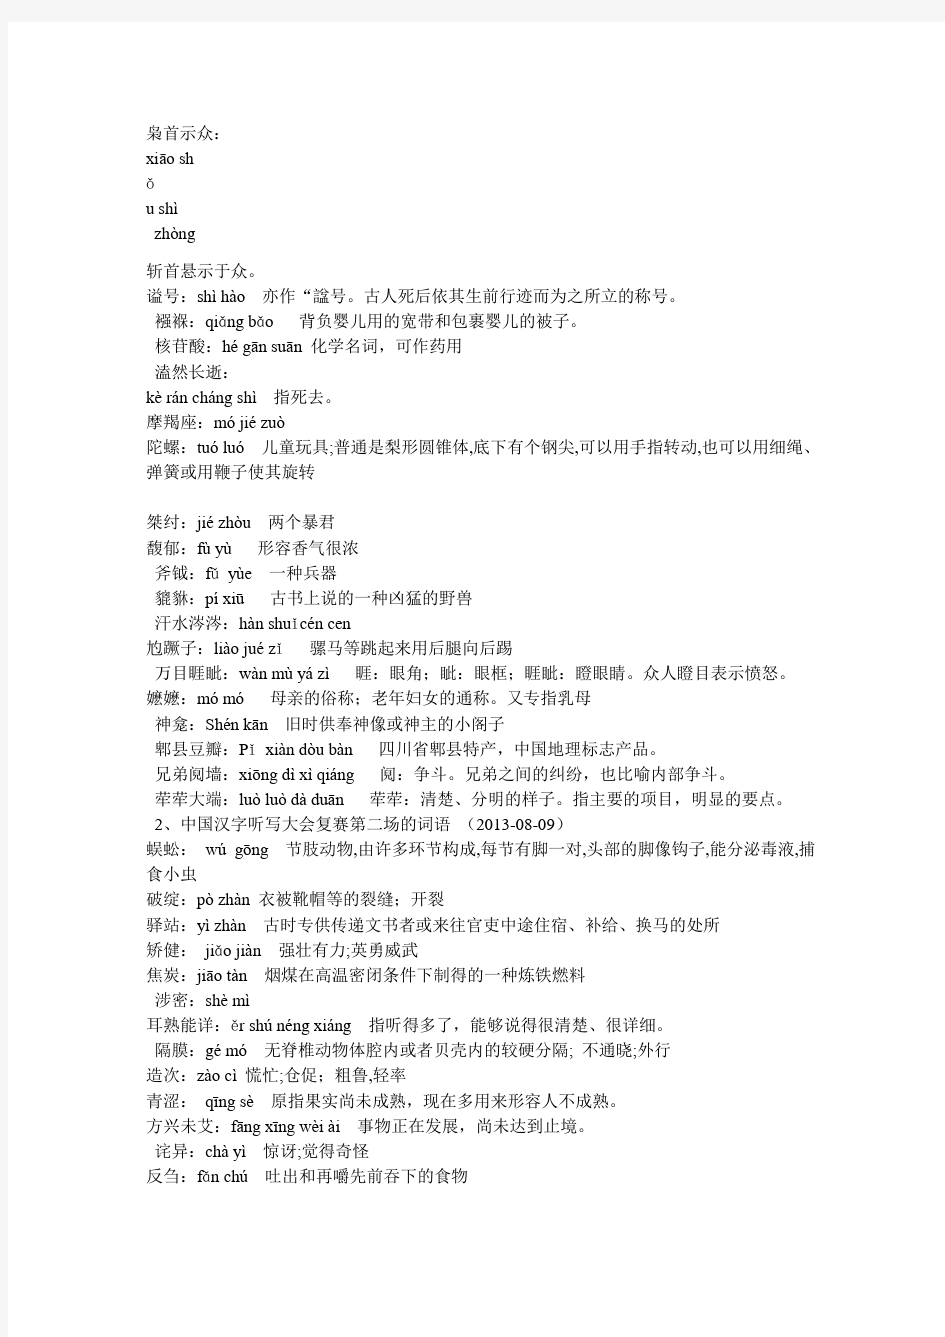 1中国汉字听写大会复赛第一场的词语-2013